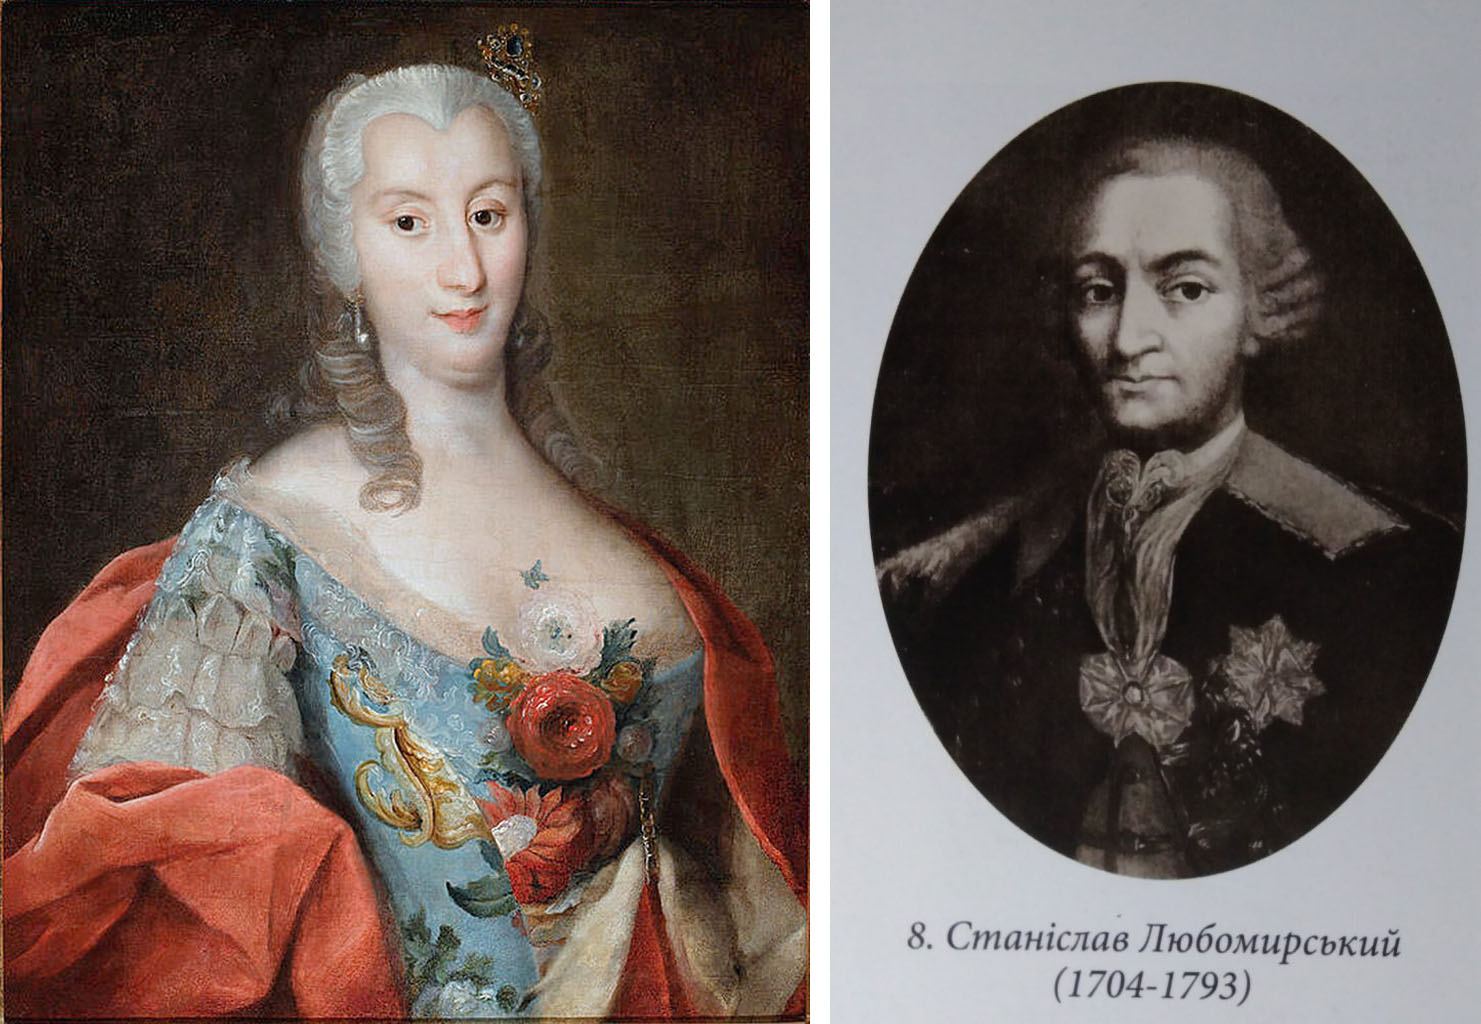 Чи не найбільший внесок у книгозбірню зробили князь Станіслав та його дружина Людвика Гонората